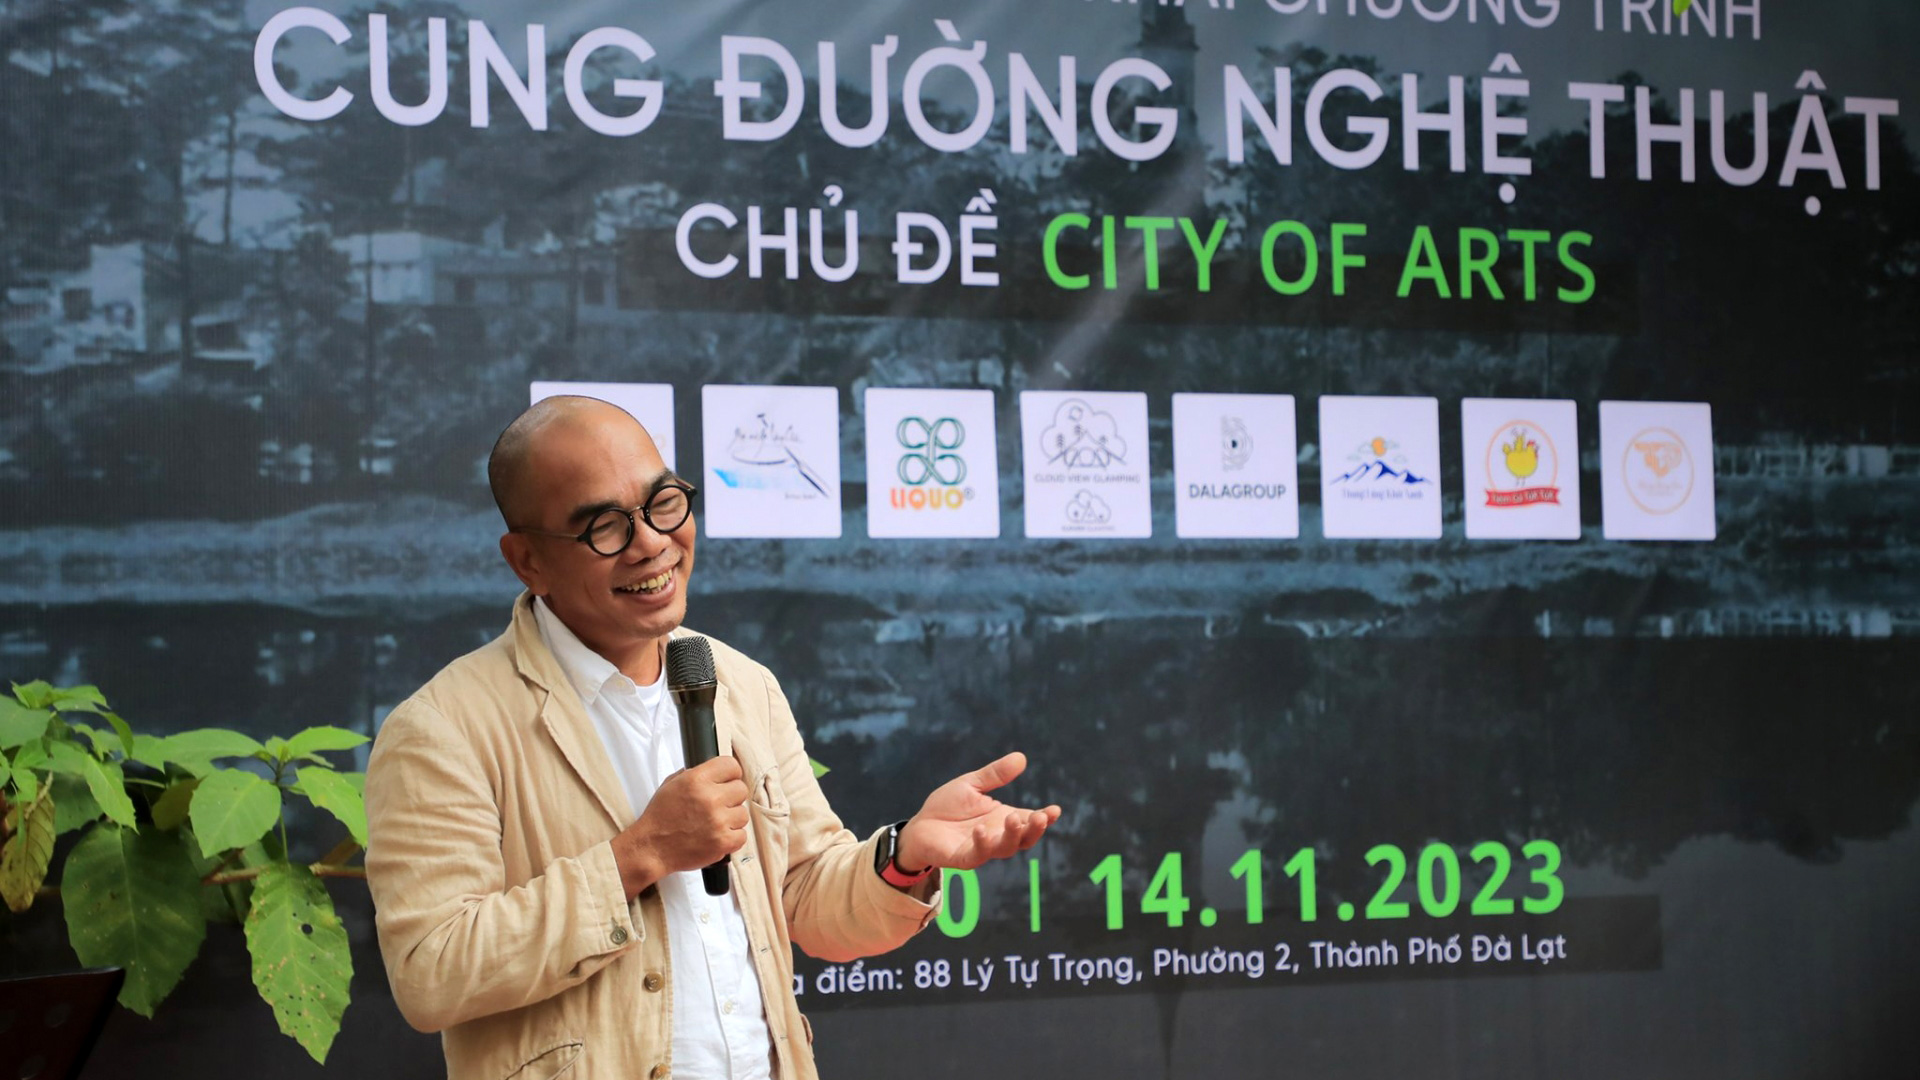 Nghệ sỹ Phan Quang giới thiệu về dự án